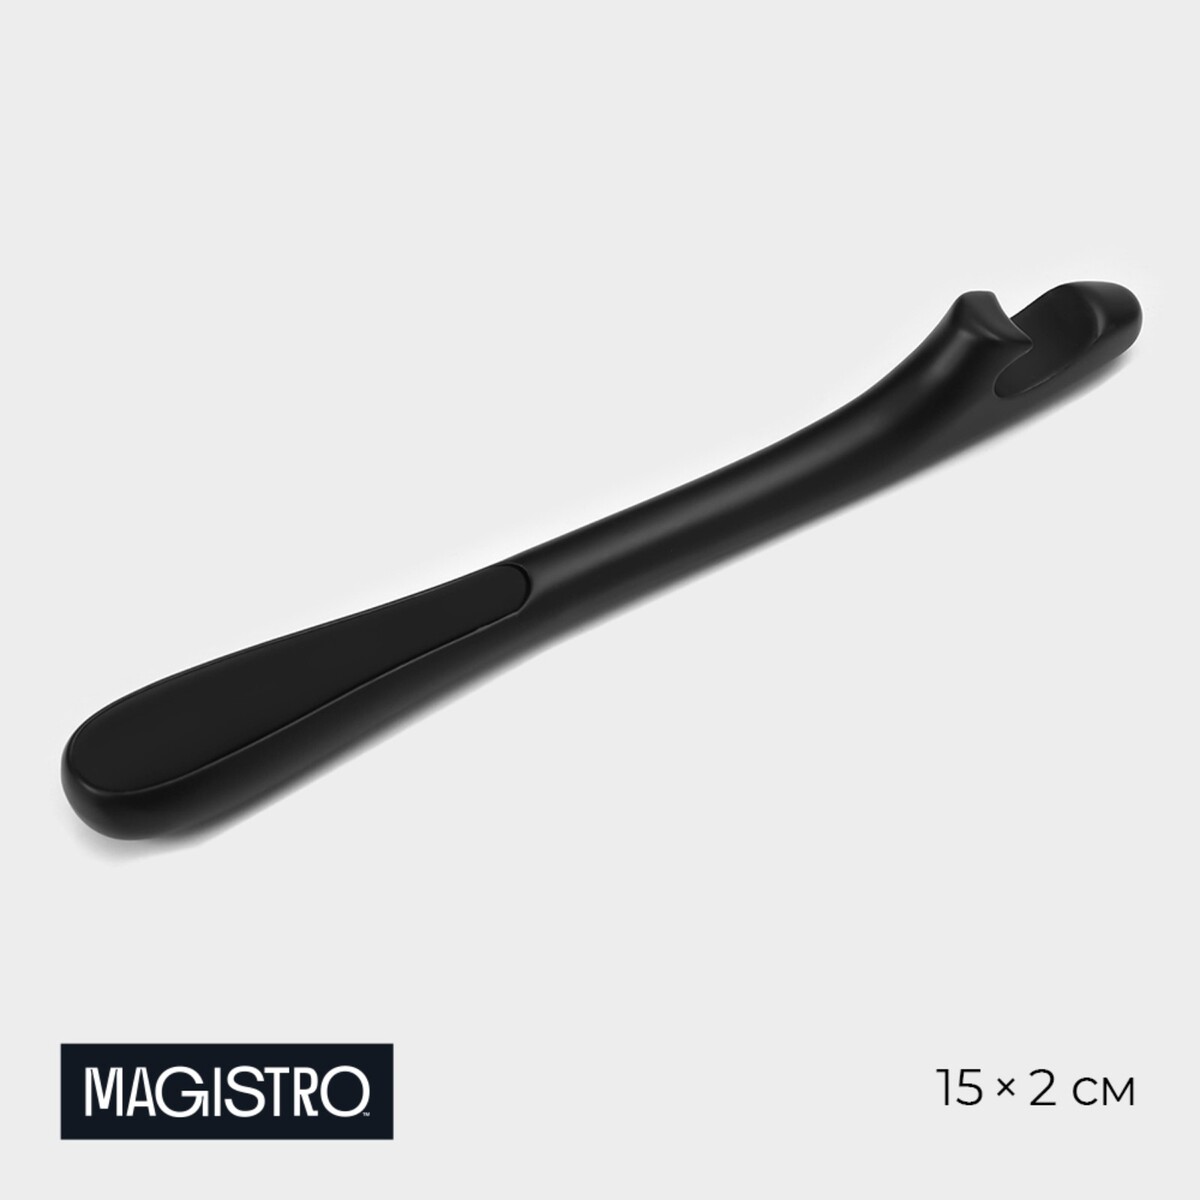 Открывашка magistro vantablack, 15×2 см, цвет черный